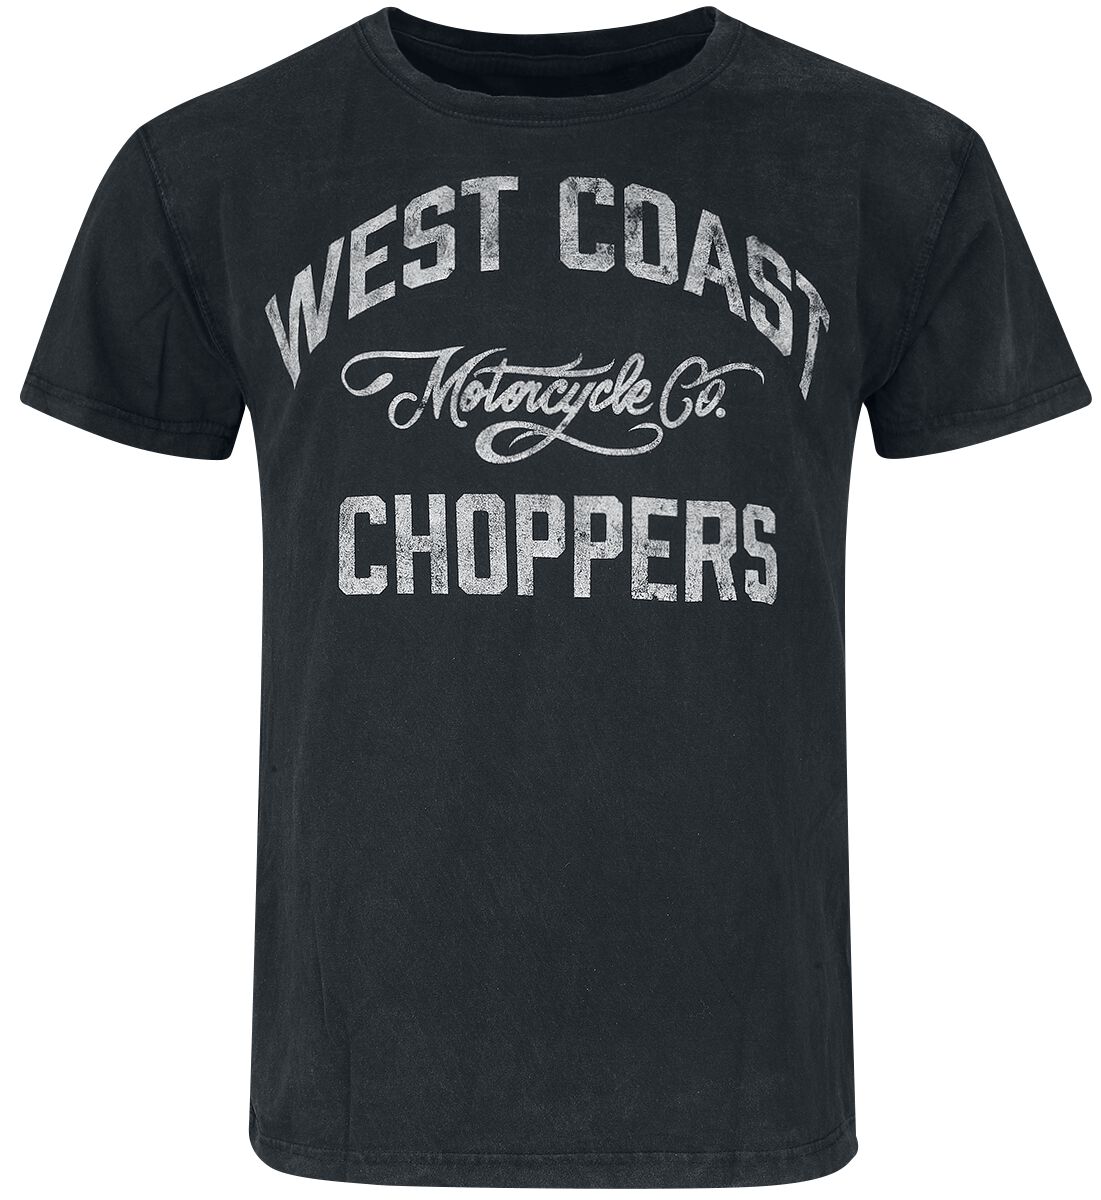 West Coast Choppers T-Shirt - Motorcycle Co. - S bis 3XL - für Männer - Größe L - schwarz